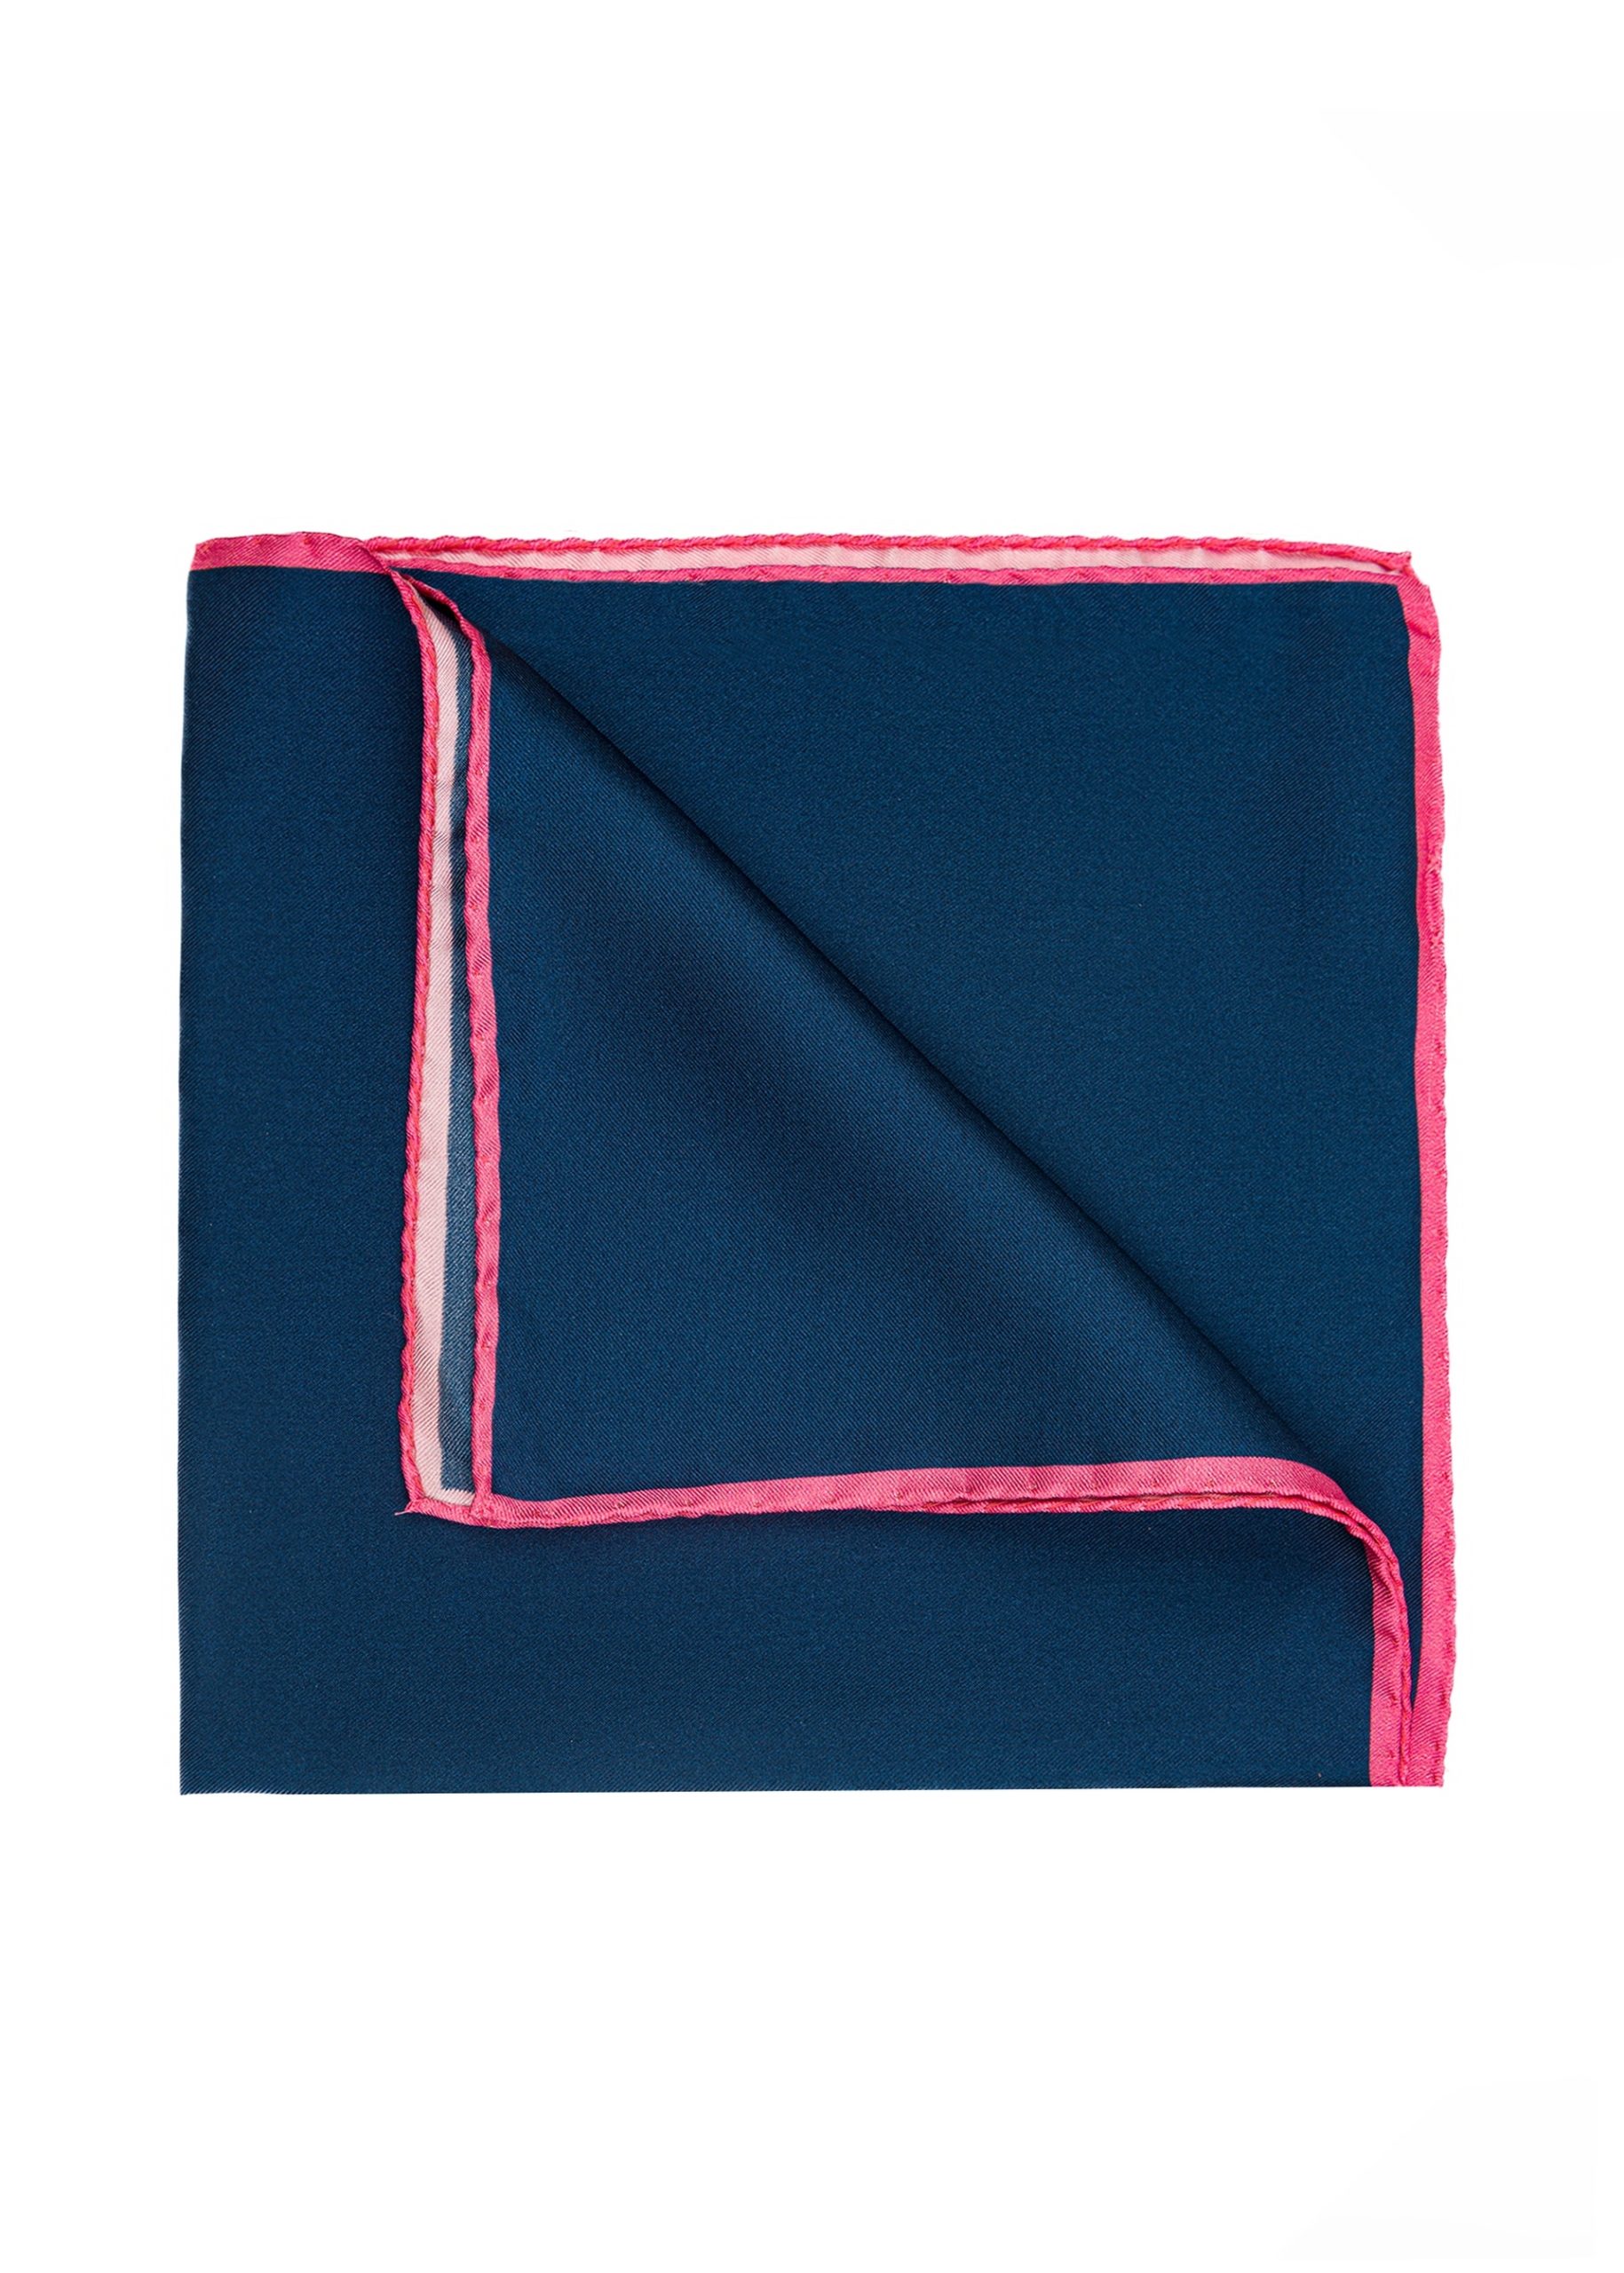 Royal and pink silk pocket square